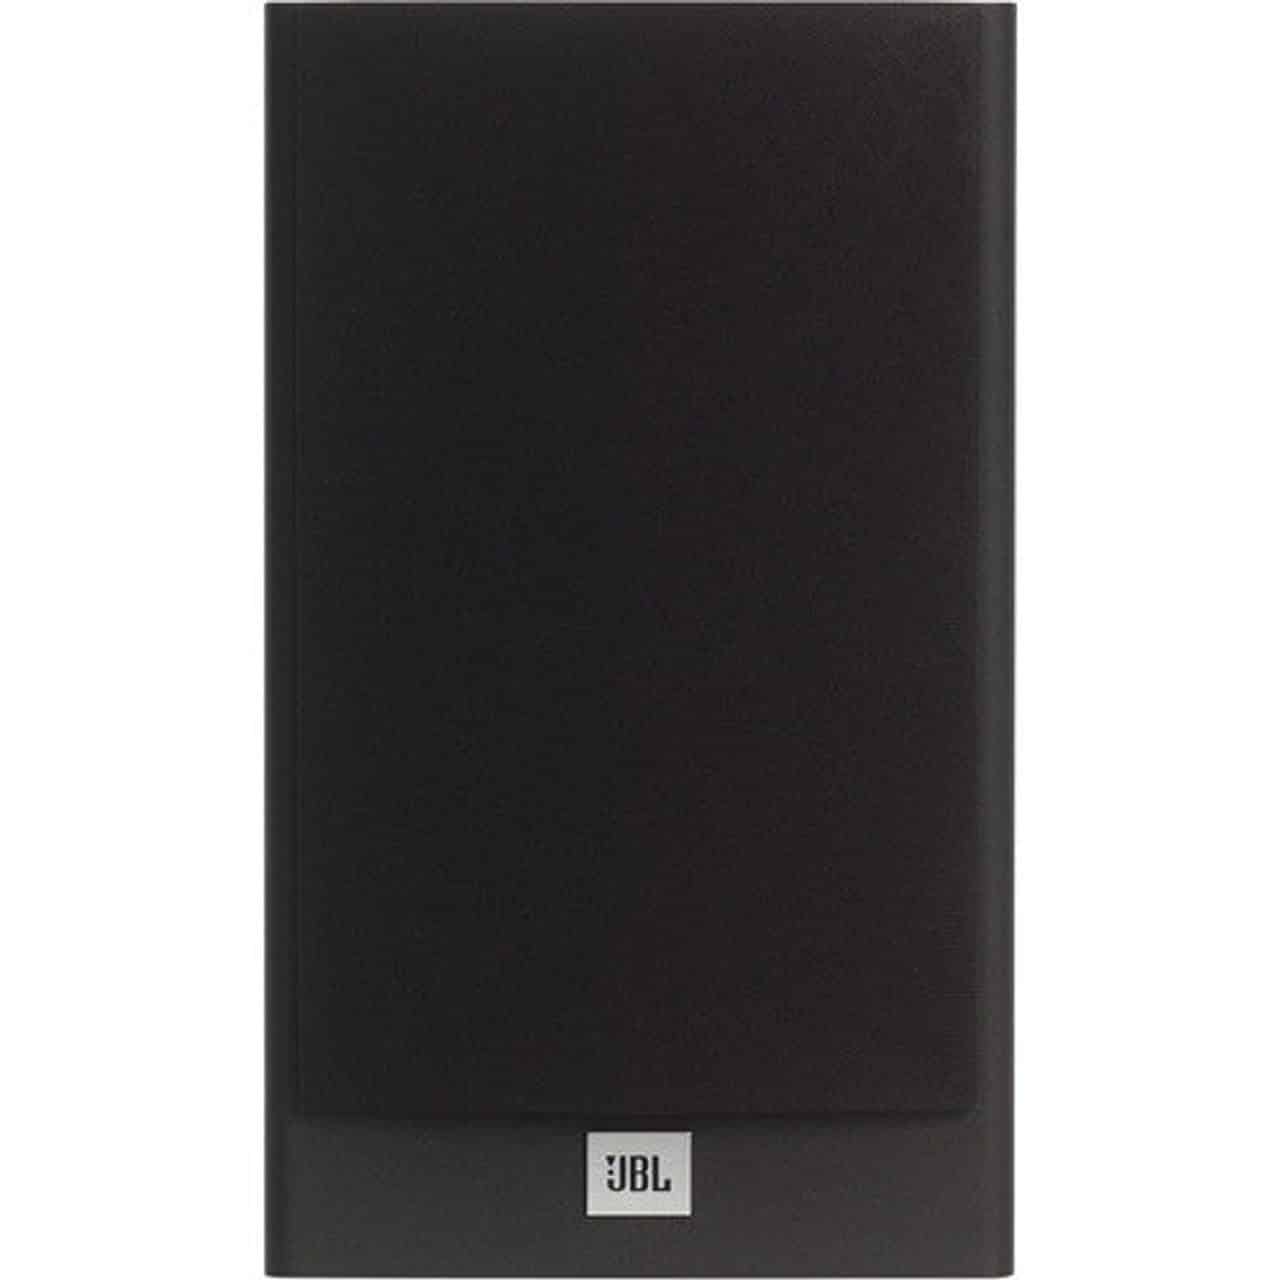 JBL Stage A130 BLK 2-Way Bookshelf Speakers (Black, Pair) 0BLK